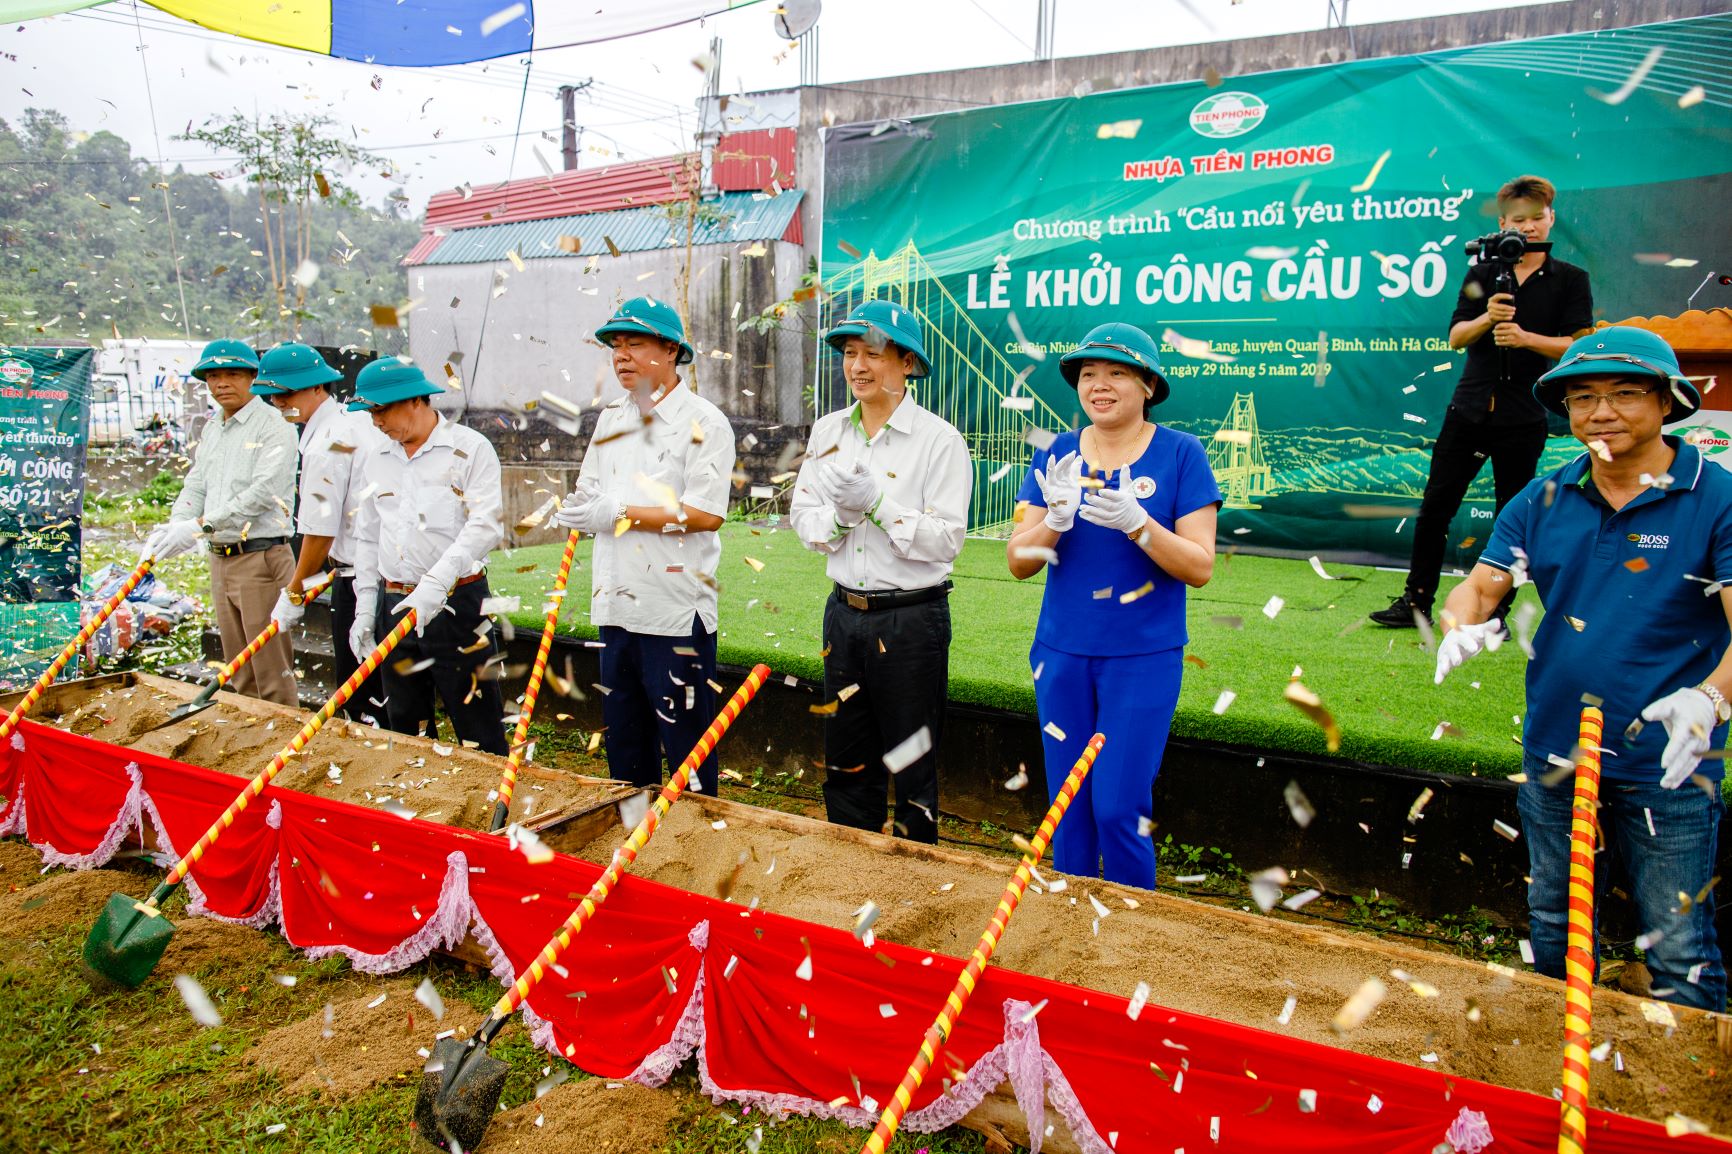 Nhựa Tiền Phong khởi công xây dựng cầu nối yêu thương bản Nhiệt tại Hà Giang.